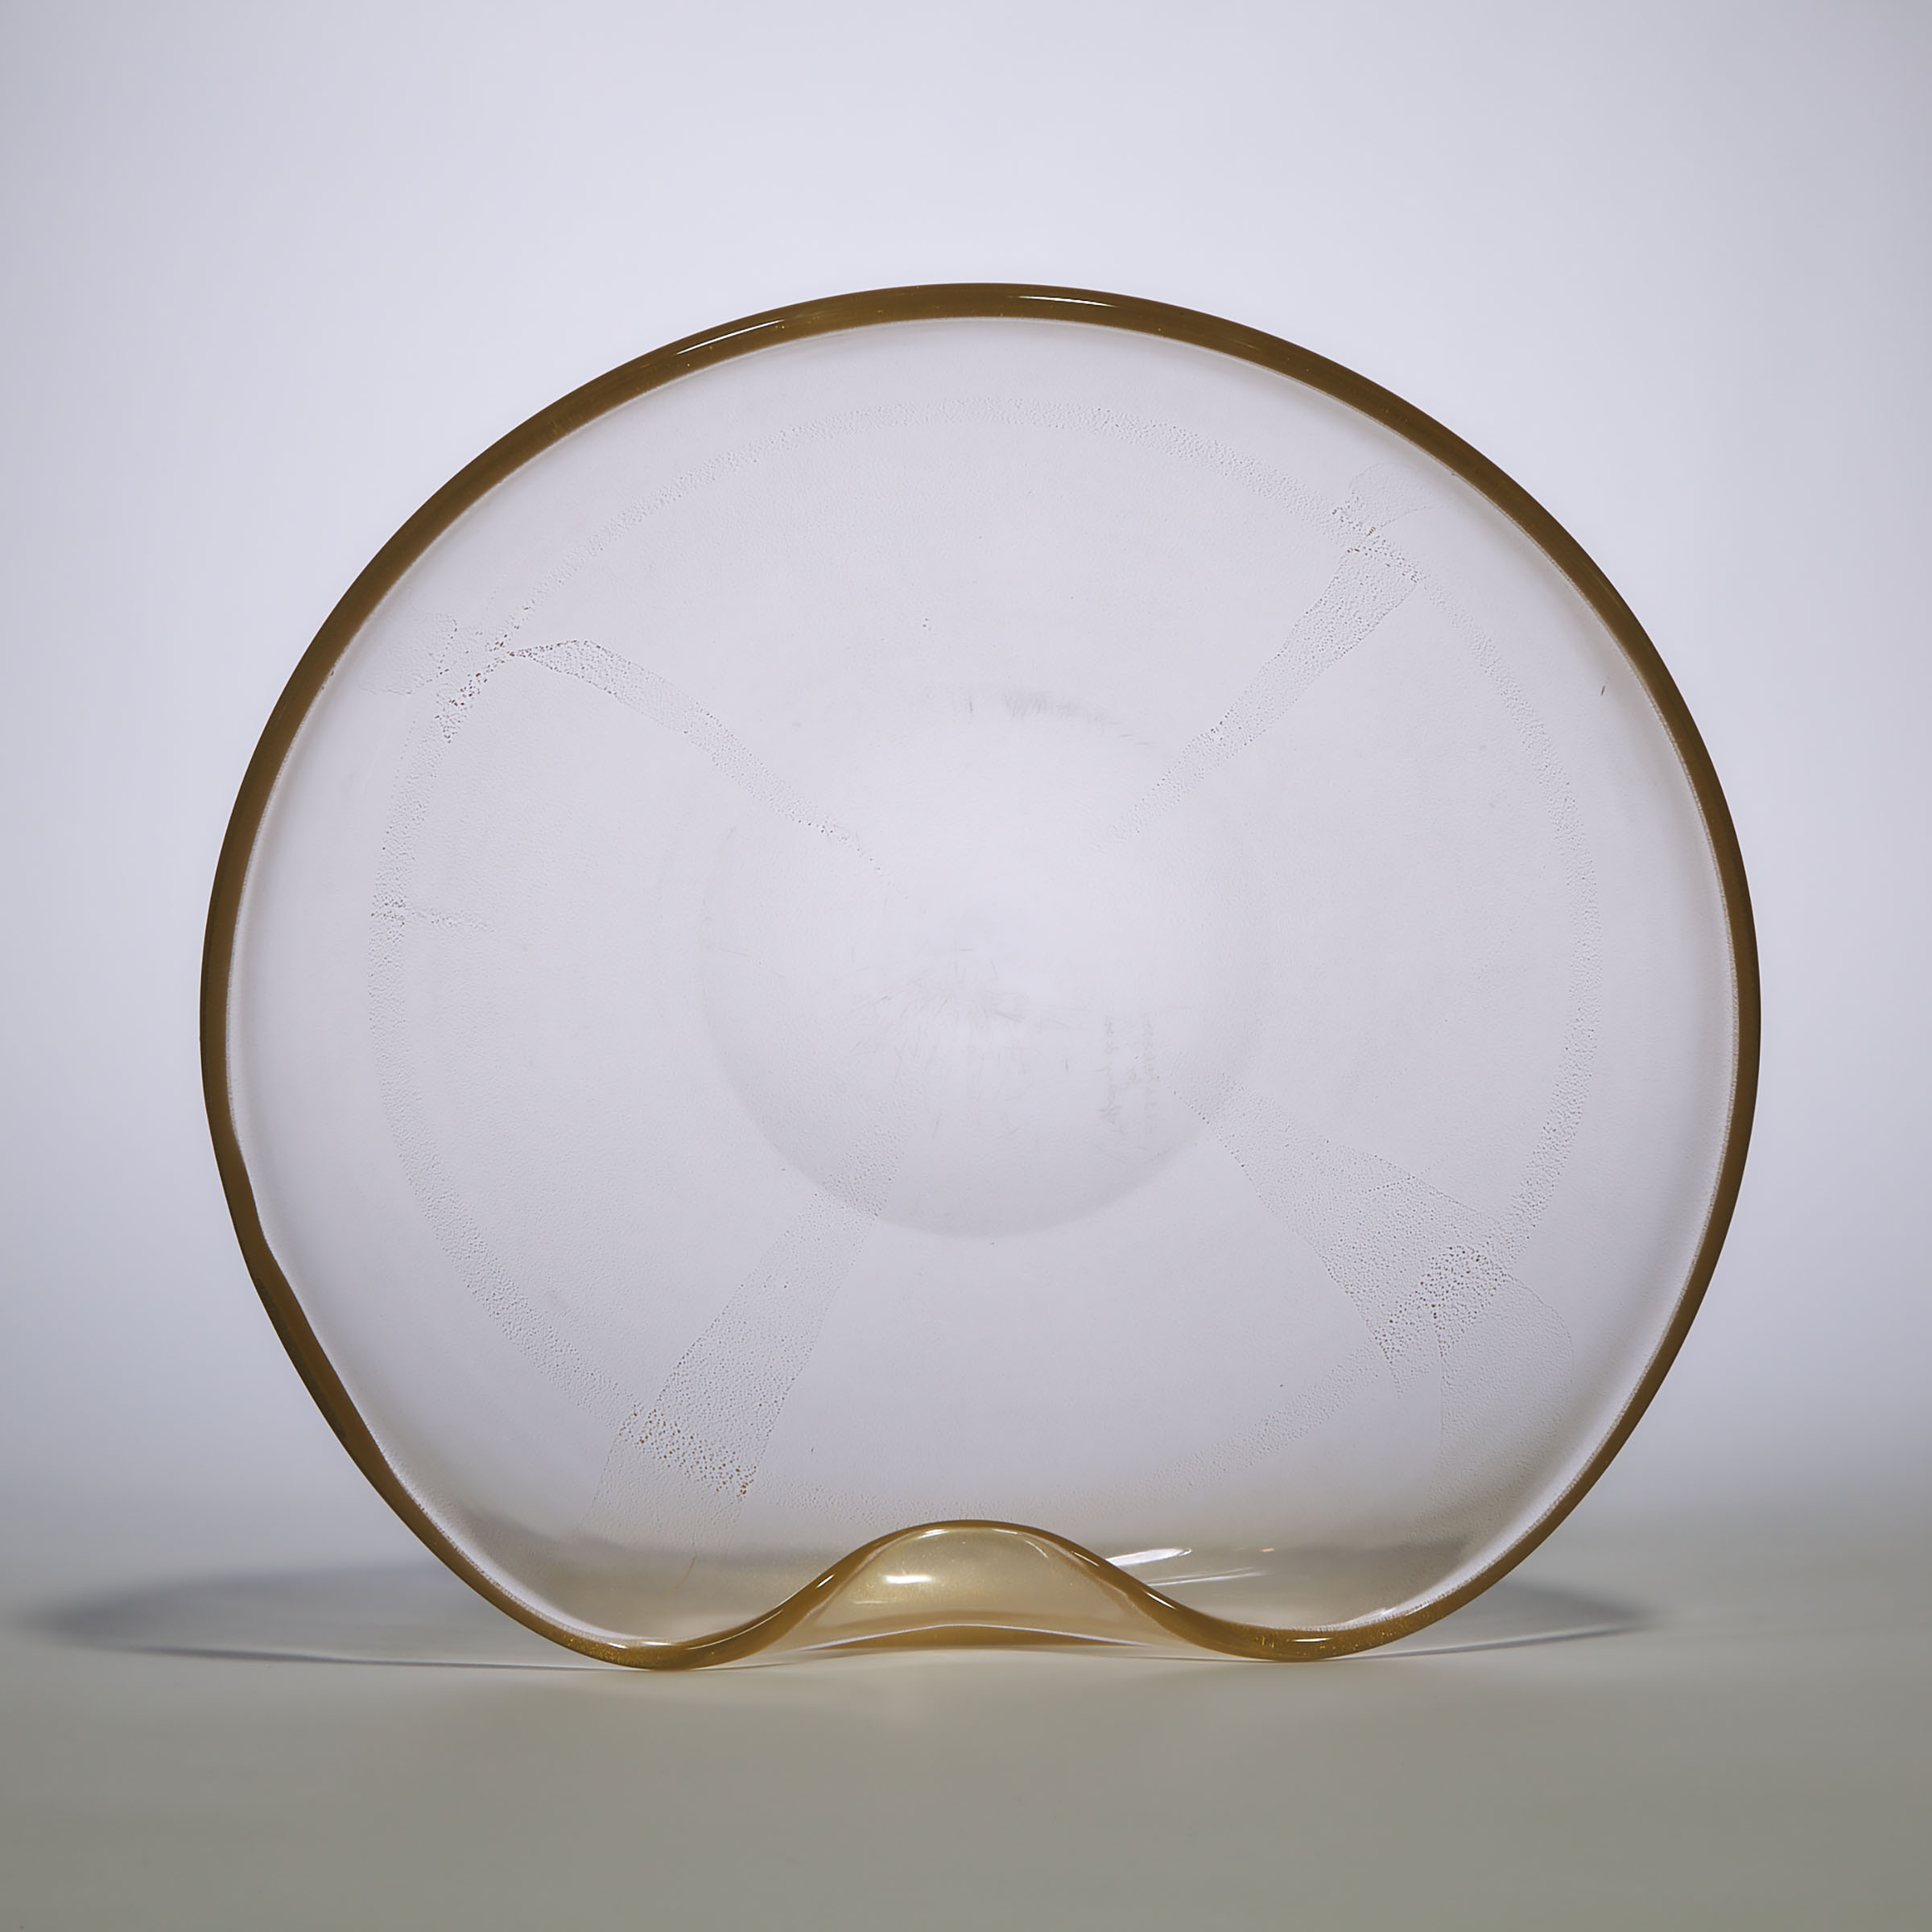 Murano Aventurine Glass Bowl, Elsa Peretti for Tiffany & Co., 20th century